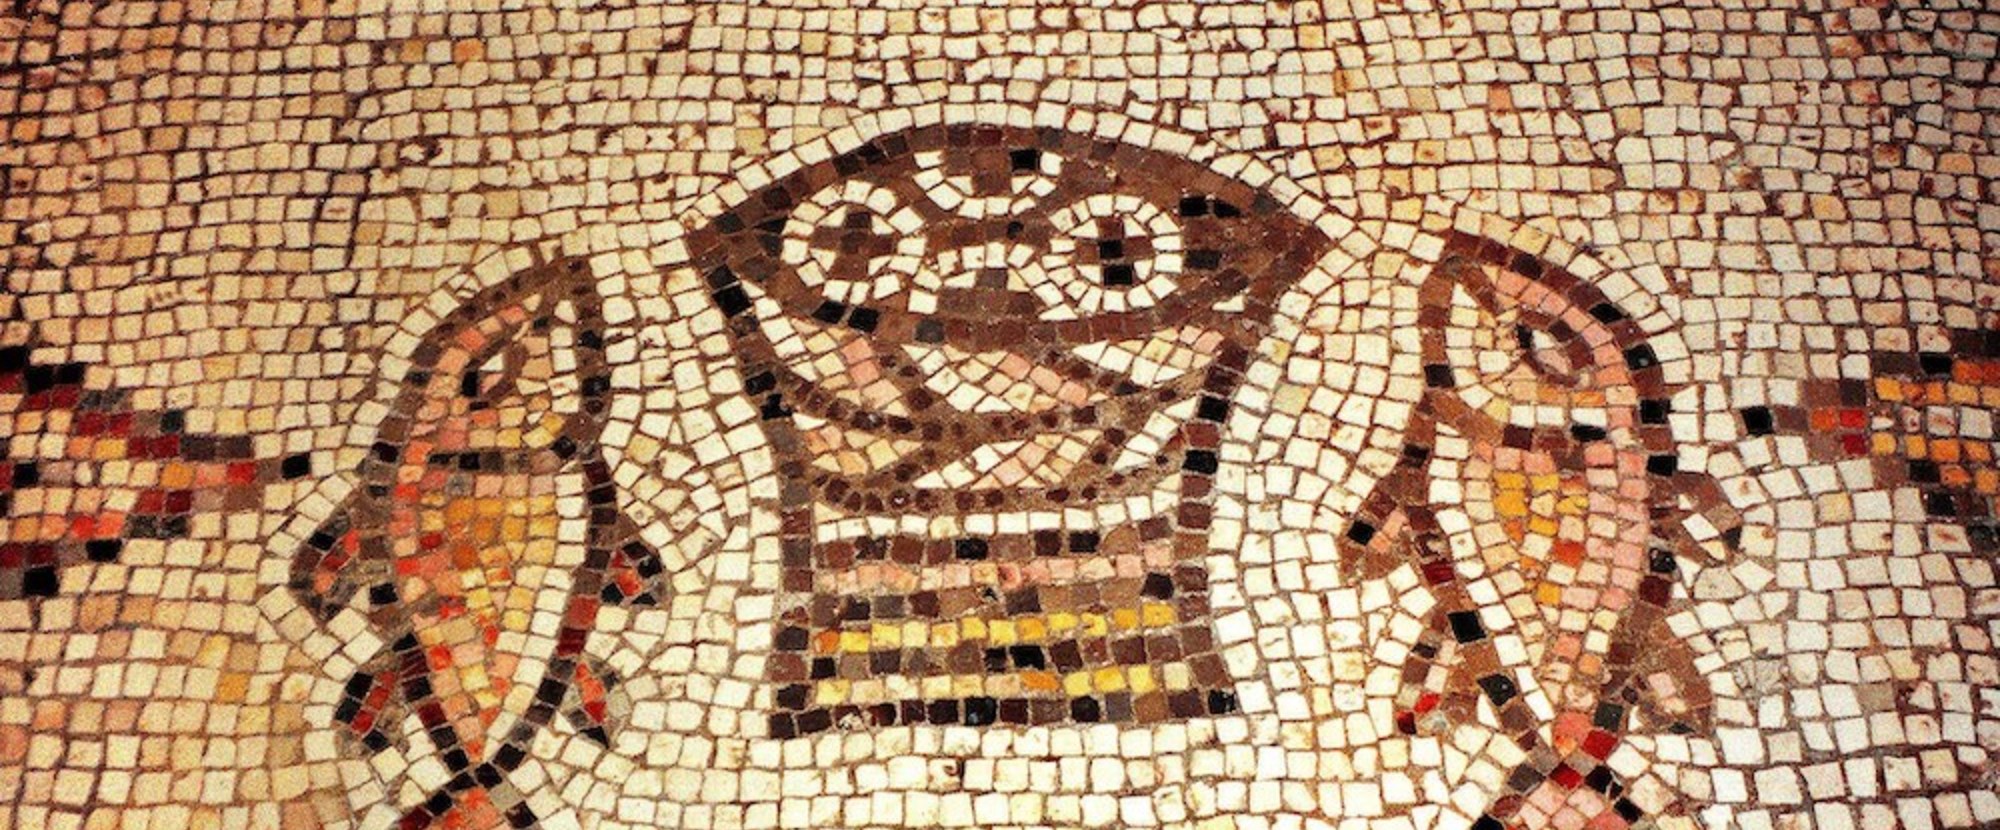 Das berühmte Brot- und Fisch-Mosaik in der Brotvermehrungskirche Tabgha am See Genezareth in Israel: Aus einem Korb ragen vier runde, mit Kreuzen gezeichnete Brote hervor. Links und rechts davon liegt ein Fisch, der gedrungenen Form nach wohl ein Pet